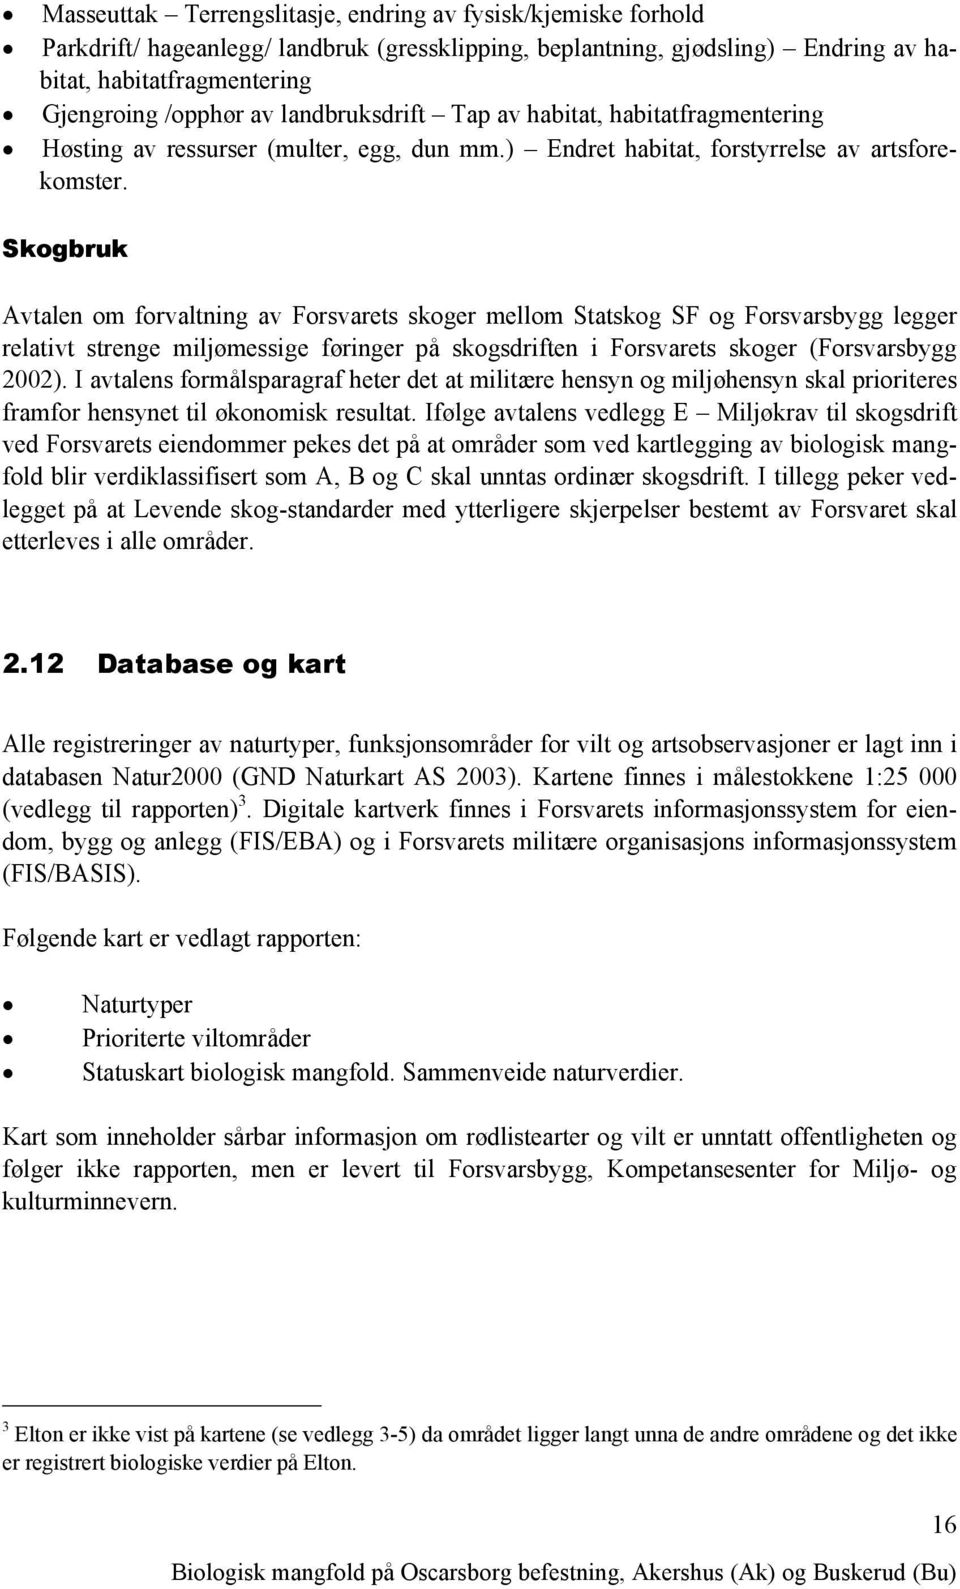 Skogbruk Avtalen om forvaltning av Forsvarets skoger mellom Statskog SF og Forsvarsbygg legger relativt strenge miljømessige føringer på skogsdriften i Forsvarets skoger (Forsvarsbygg 2002).